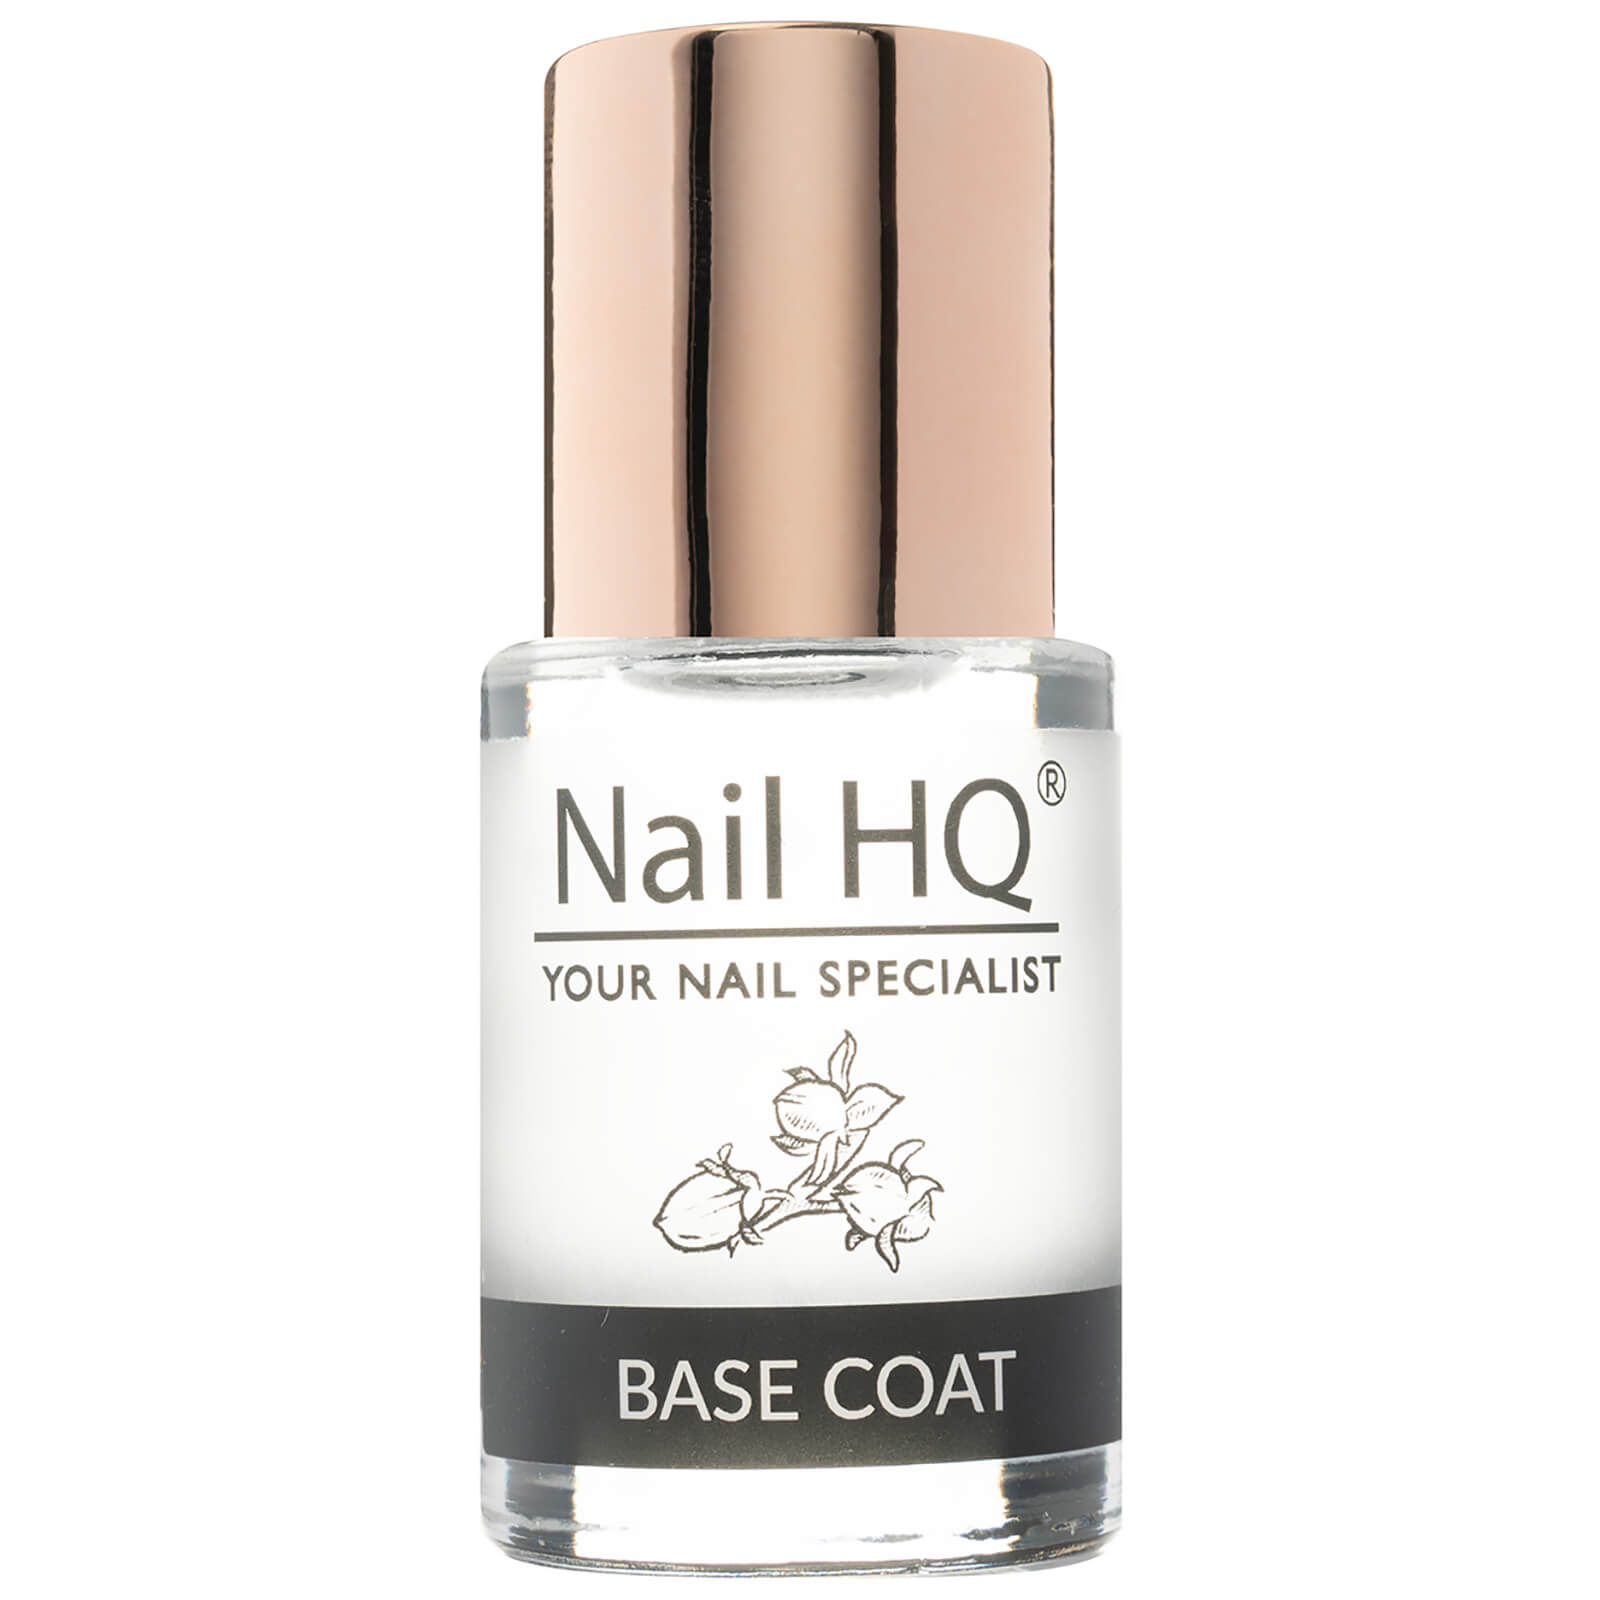 Image of Nail HQ Nail Base Coat 10ml